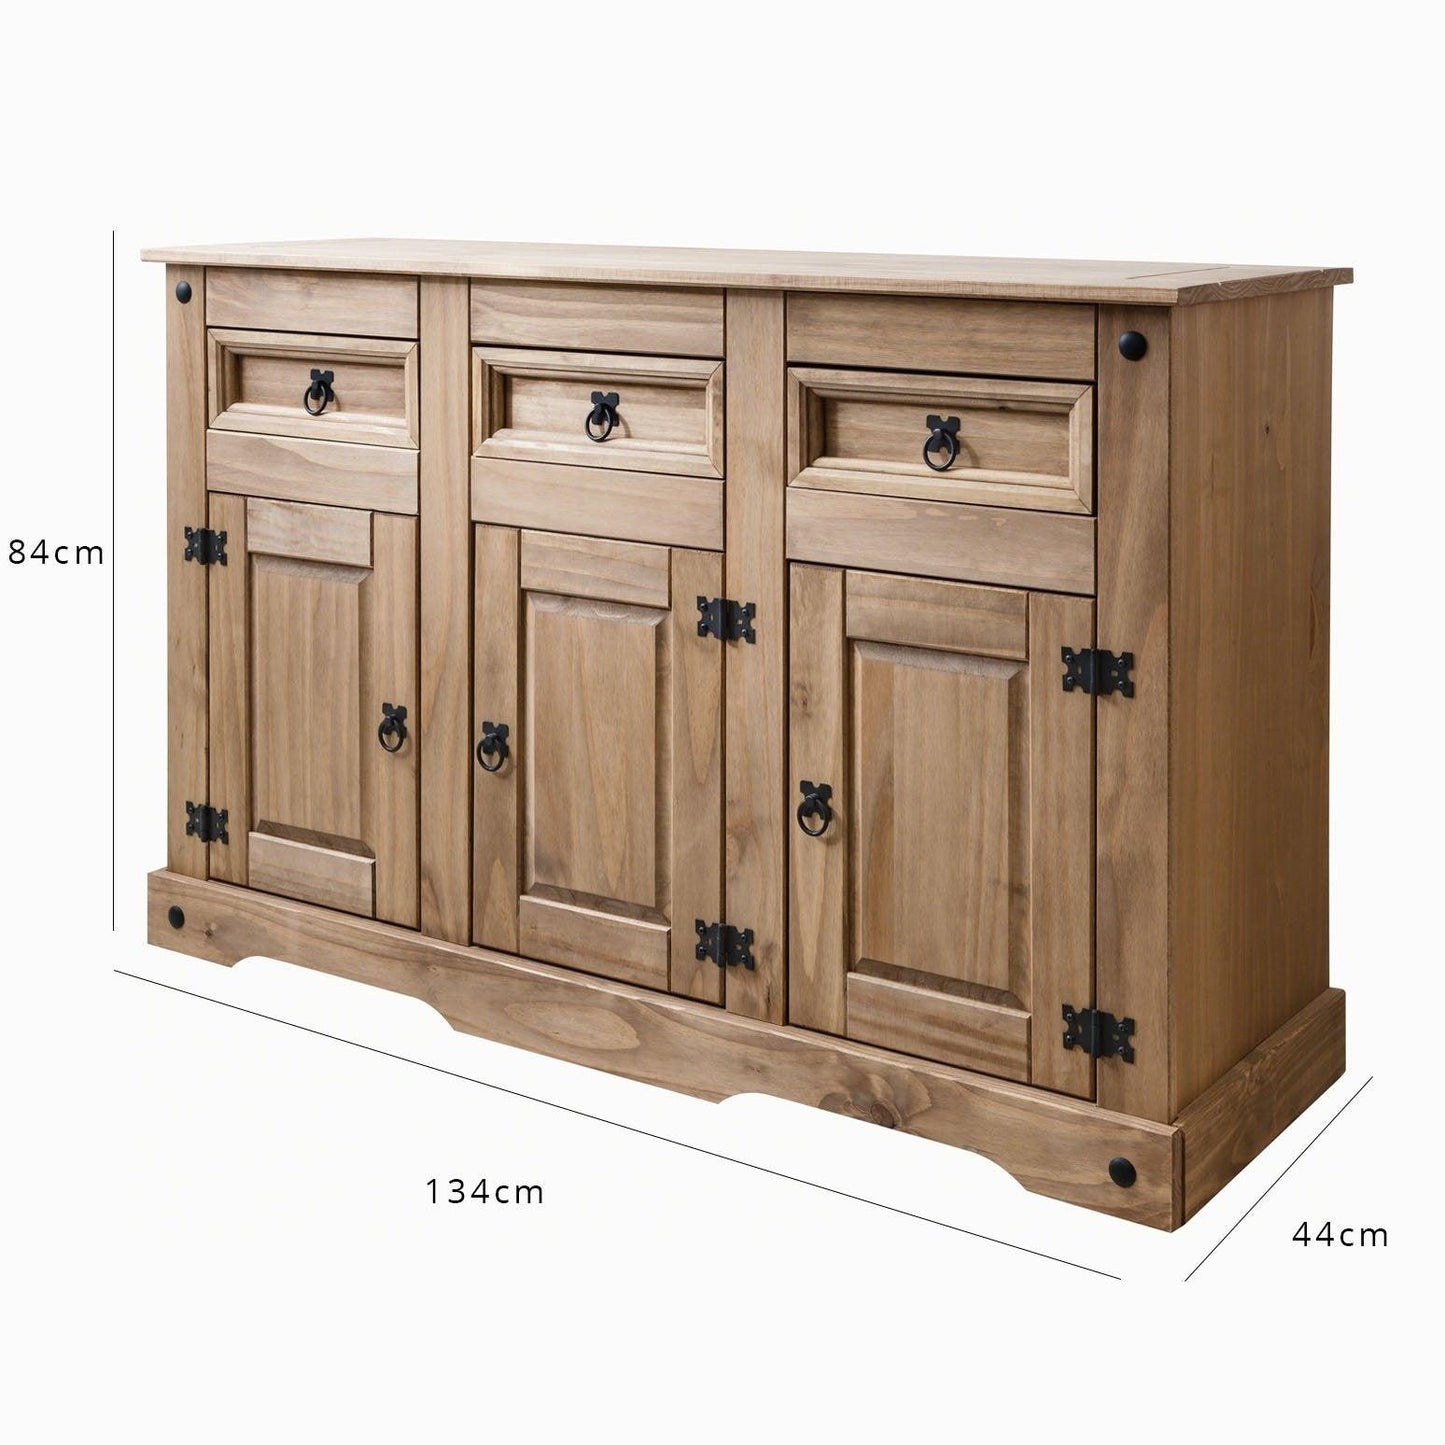 Sideboard - 3 Drawers 3 Doors - Solid Wood - Laura James